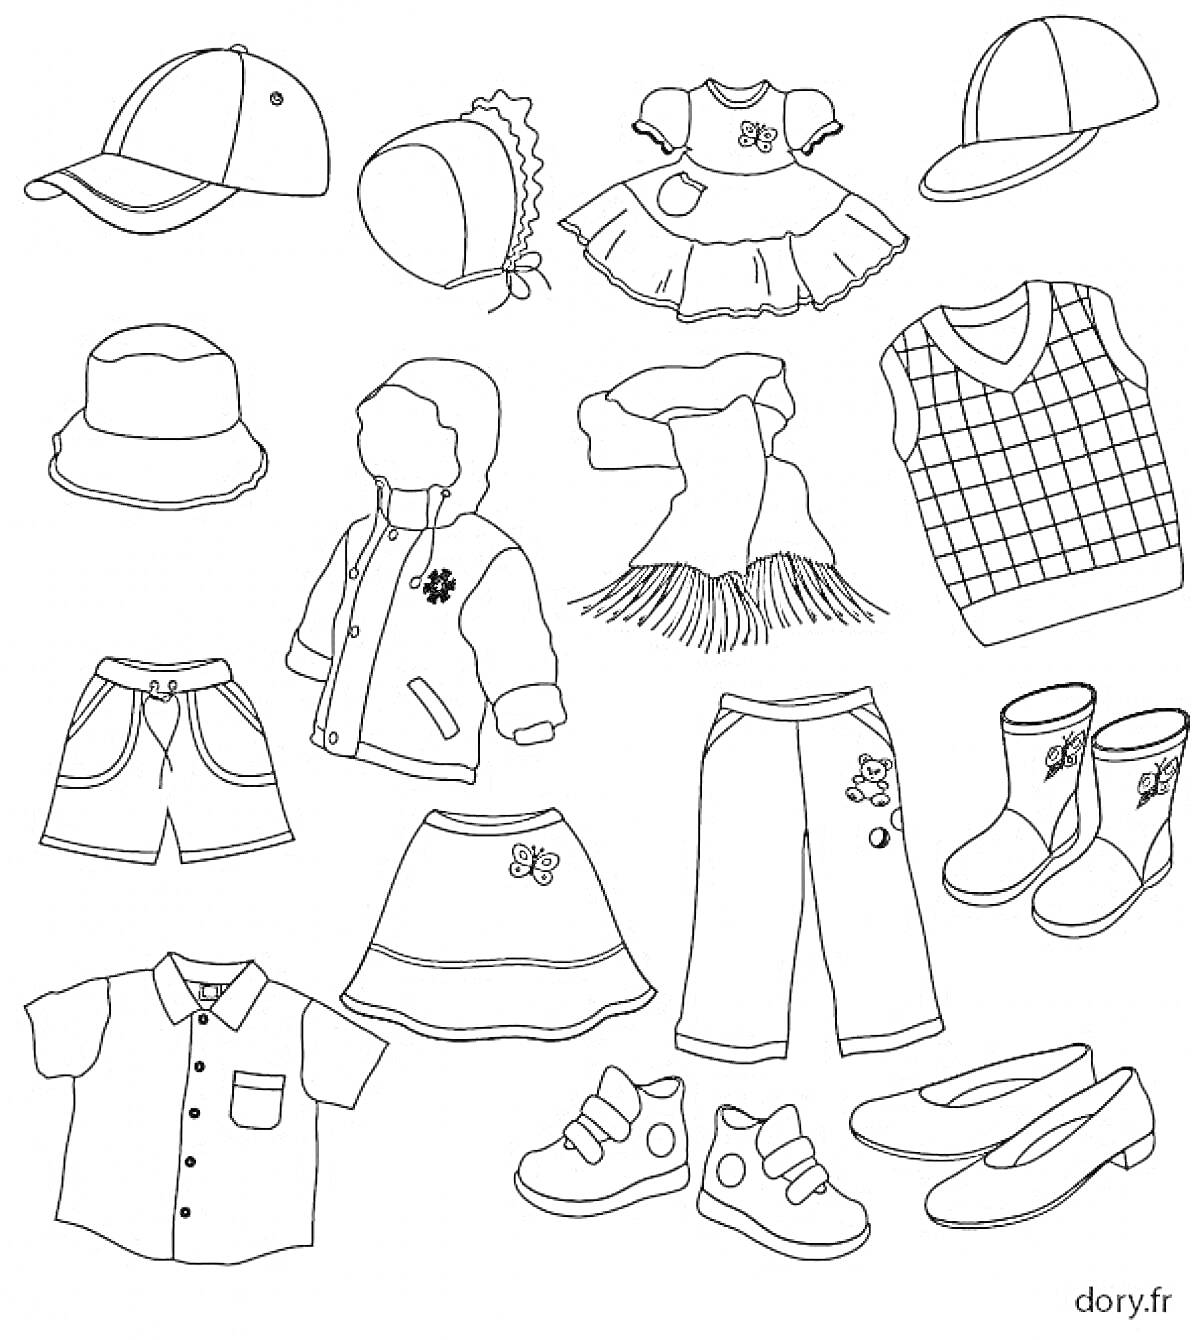 Раскраска Головные уборы, платья, кофта, шарф, майка, шорты, юбка, штаны, куртка, рубашка, футболка, обувь, кроссовки, балетки